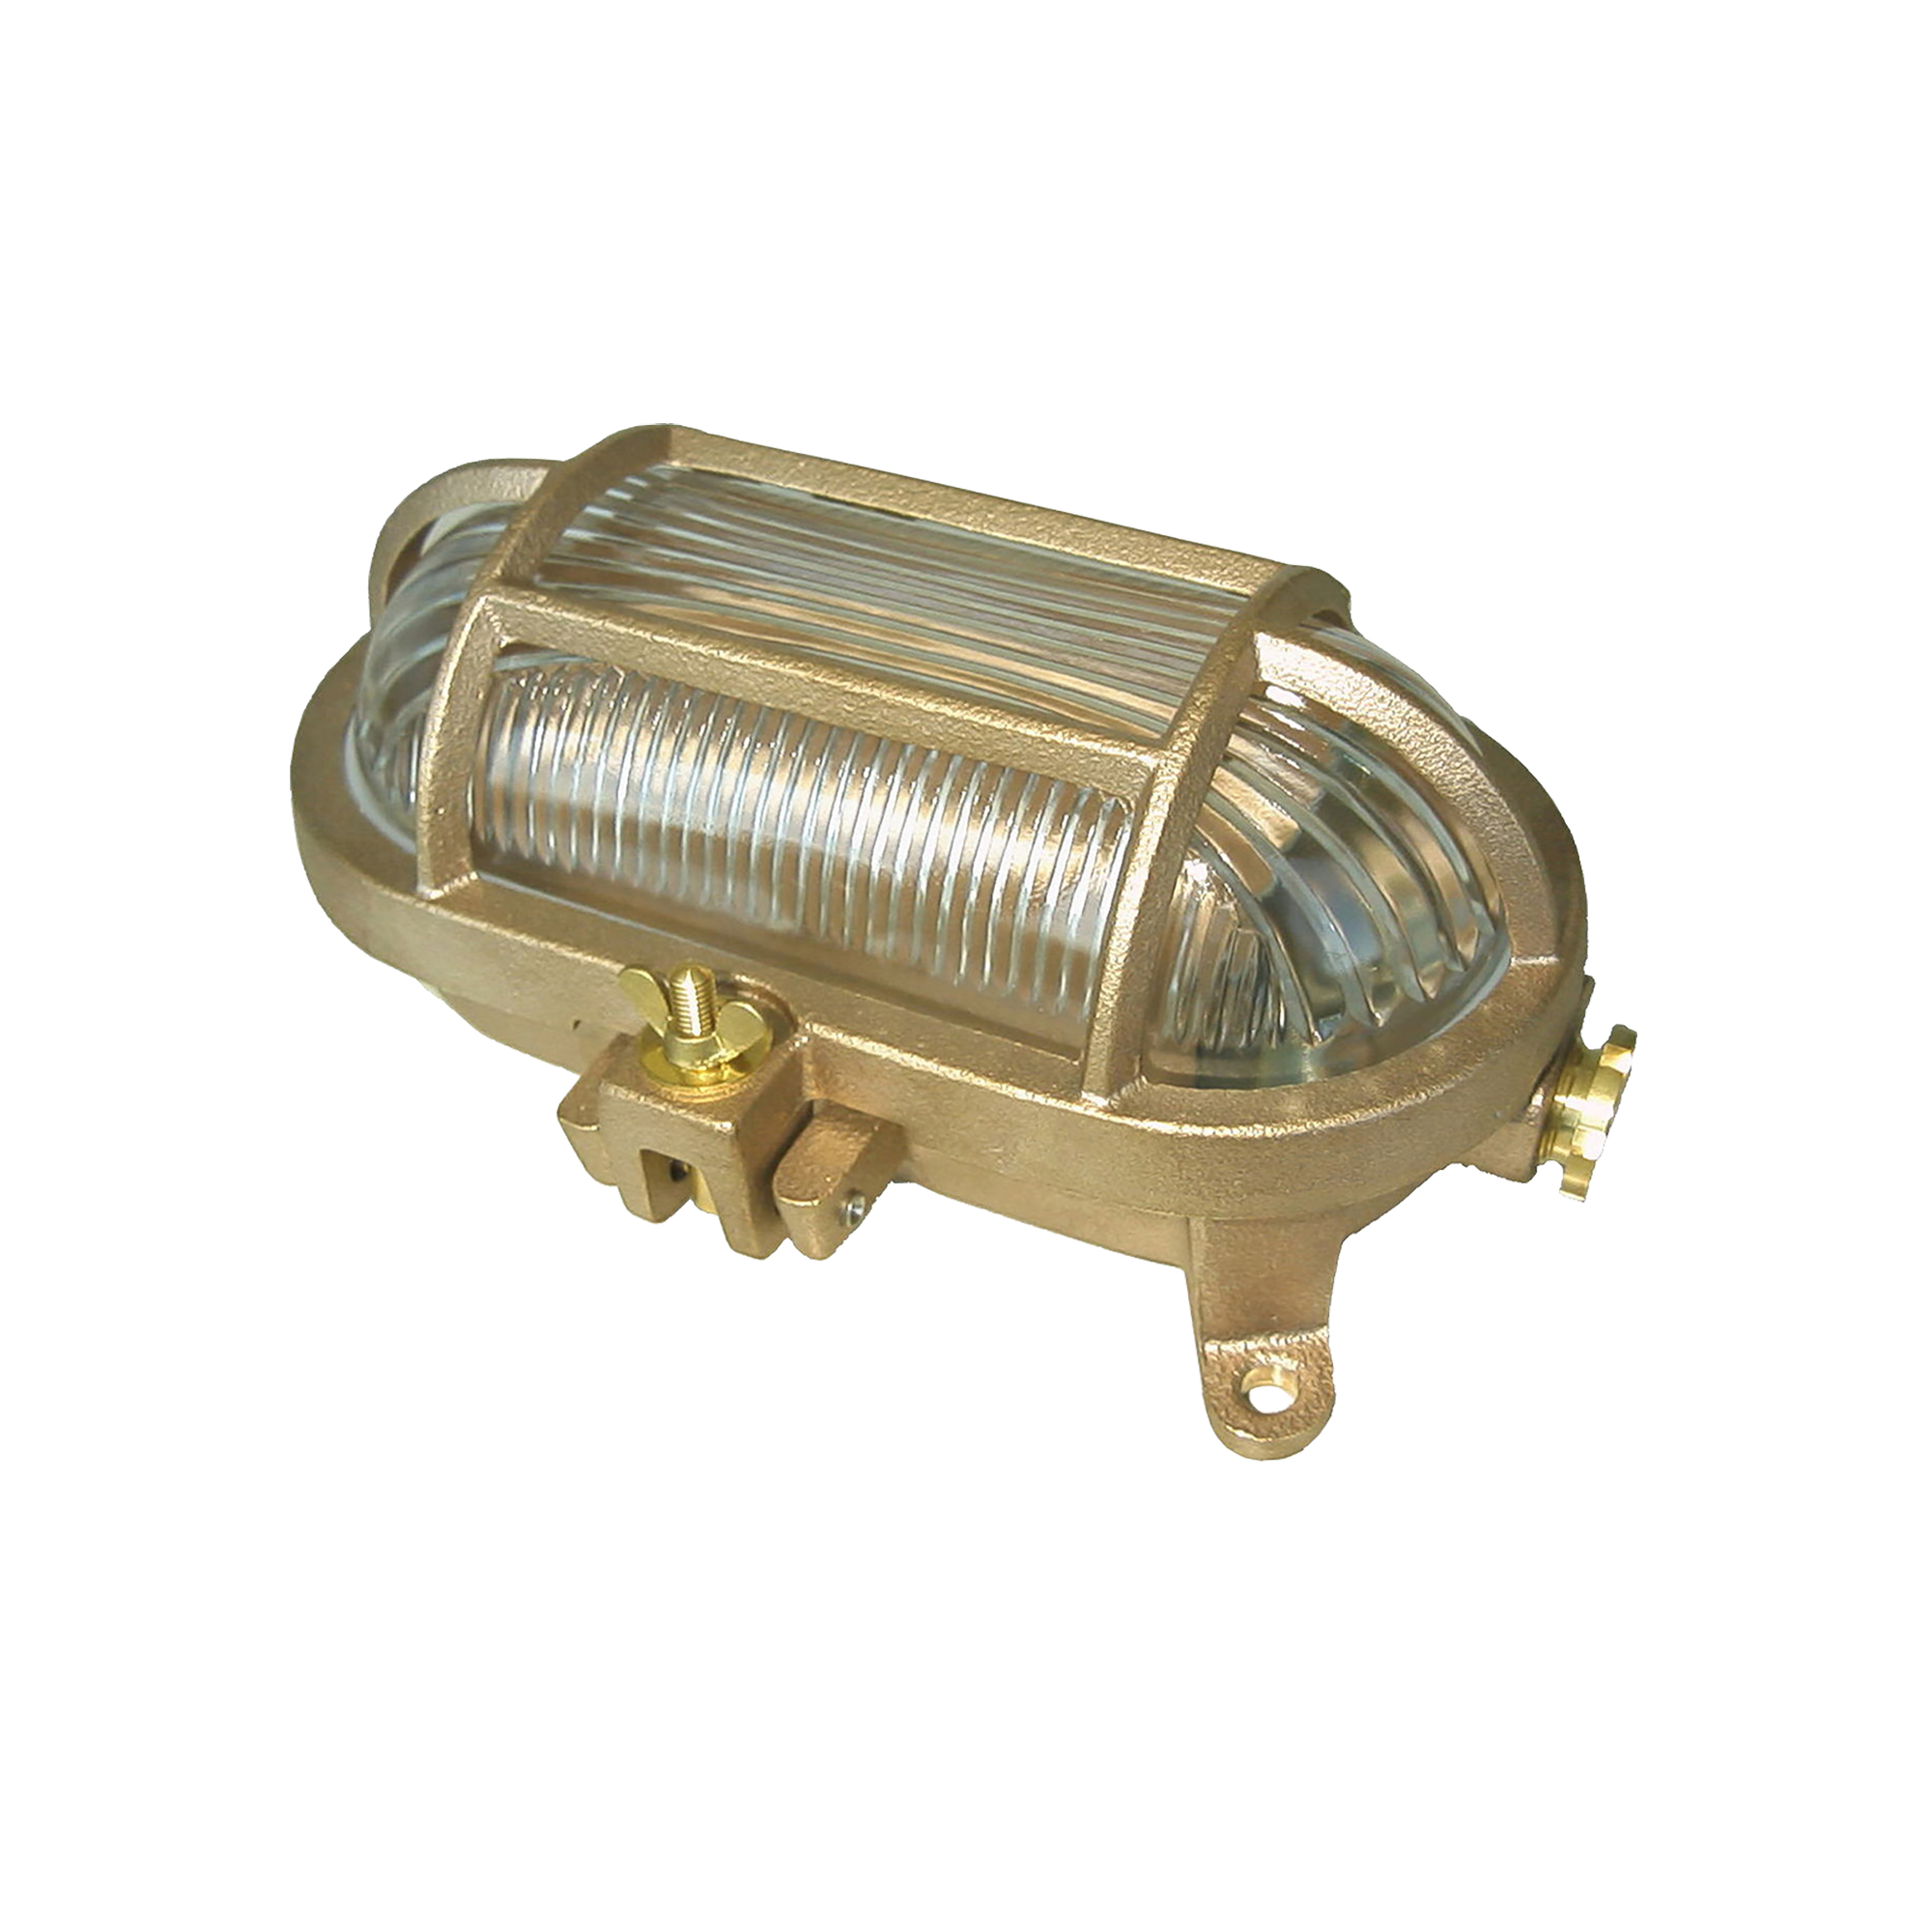 船舶照明 甲羅型ライト真鍮 LT-BR002-05-G085 ラウンドフォルムの真鍮ランプ